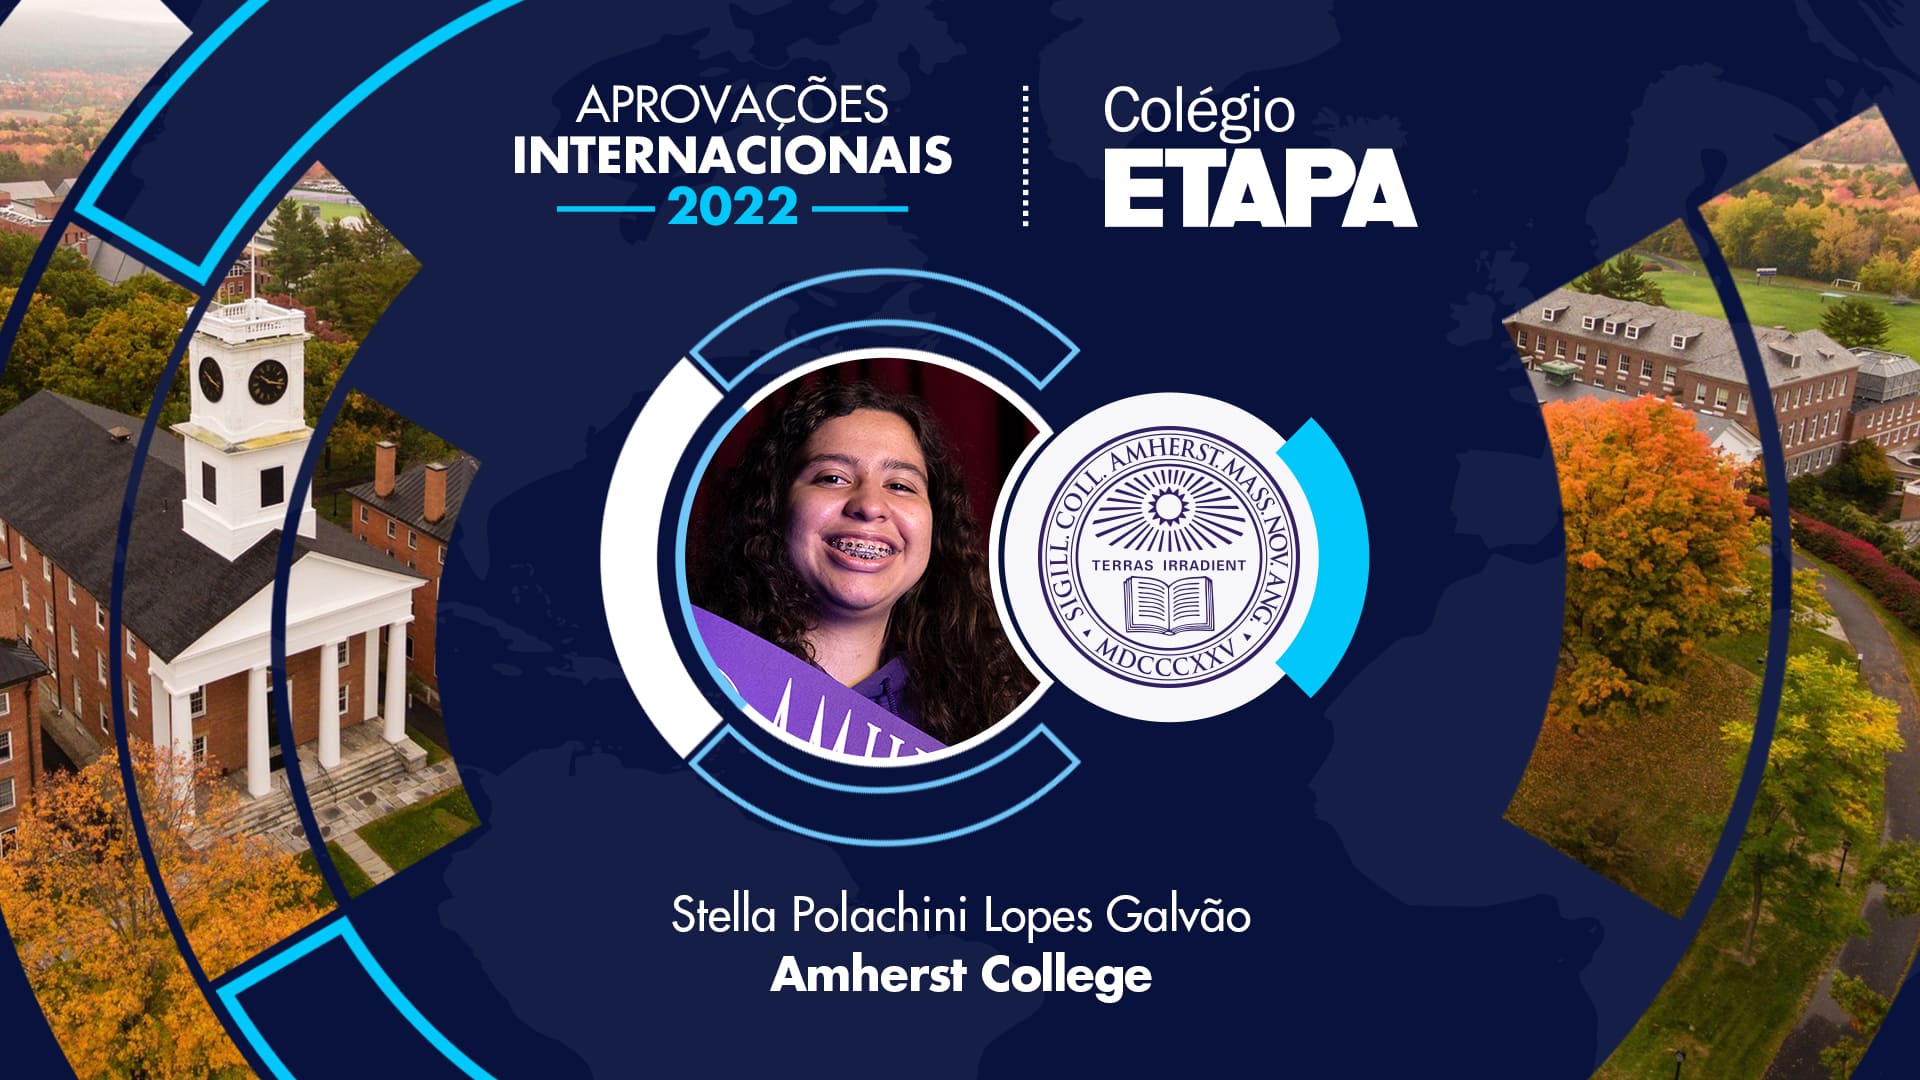 Stella Polachini Lopes Galvão explica como foi o seu application e o que fez para realizar o sonho da aprovação no exterior.